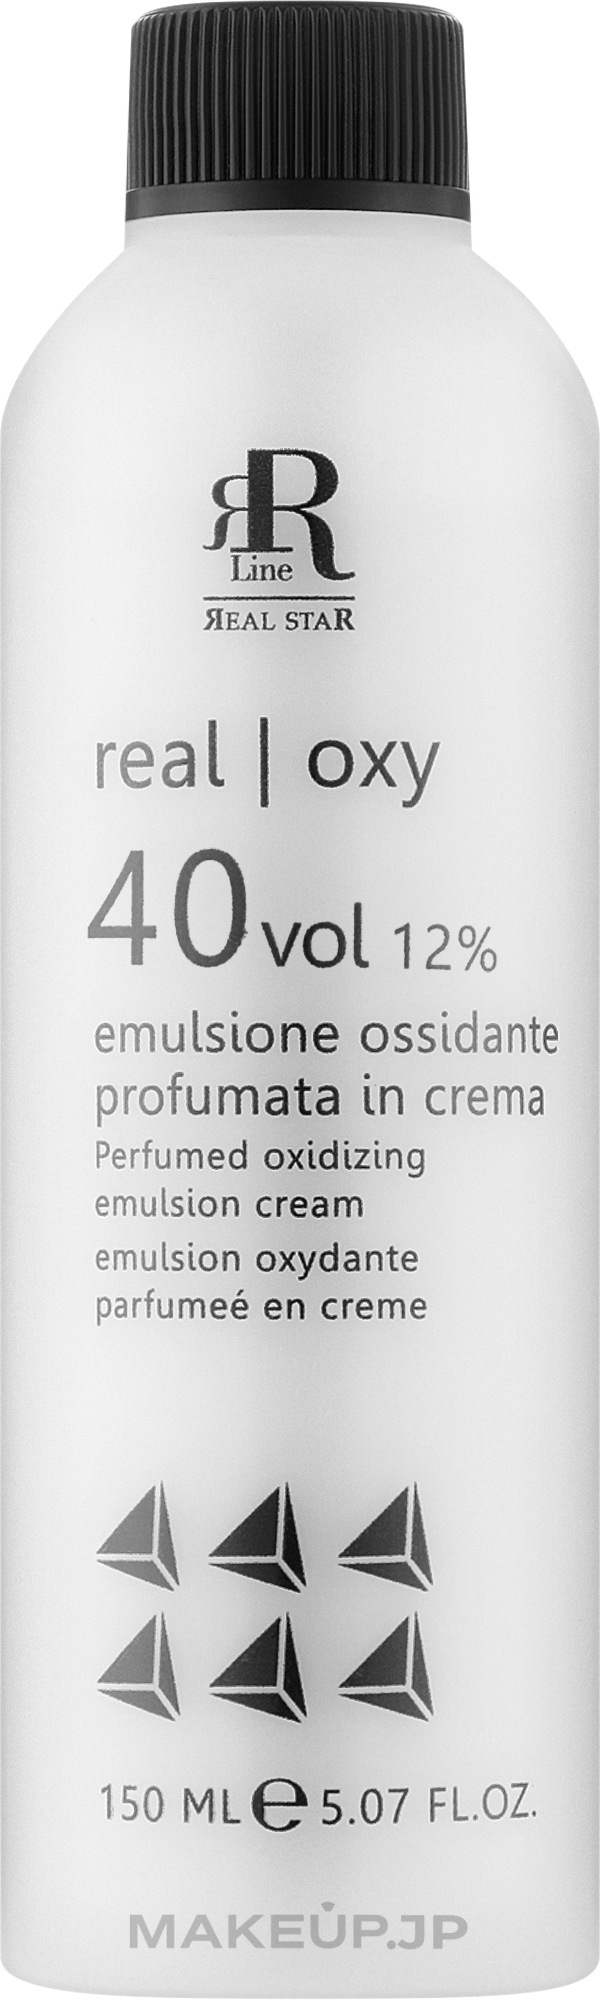 Perfumed Oxidizing Emulsion 12% - RR Line Parfymed Oxidizing Emulsion Cream — photo 150 ml